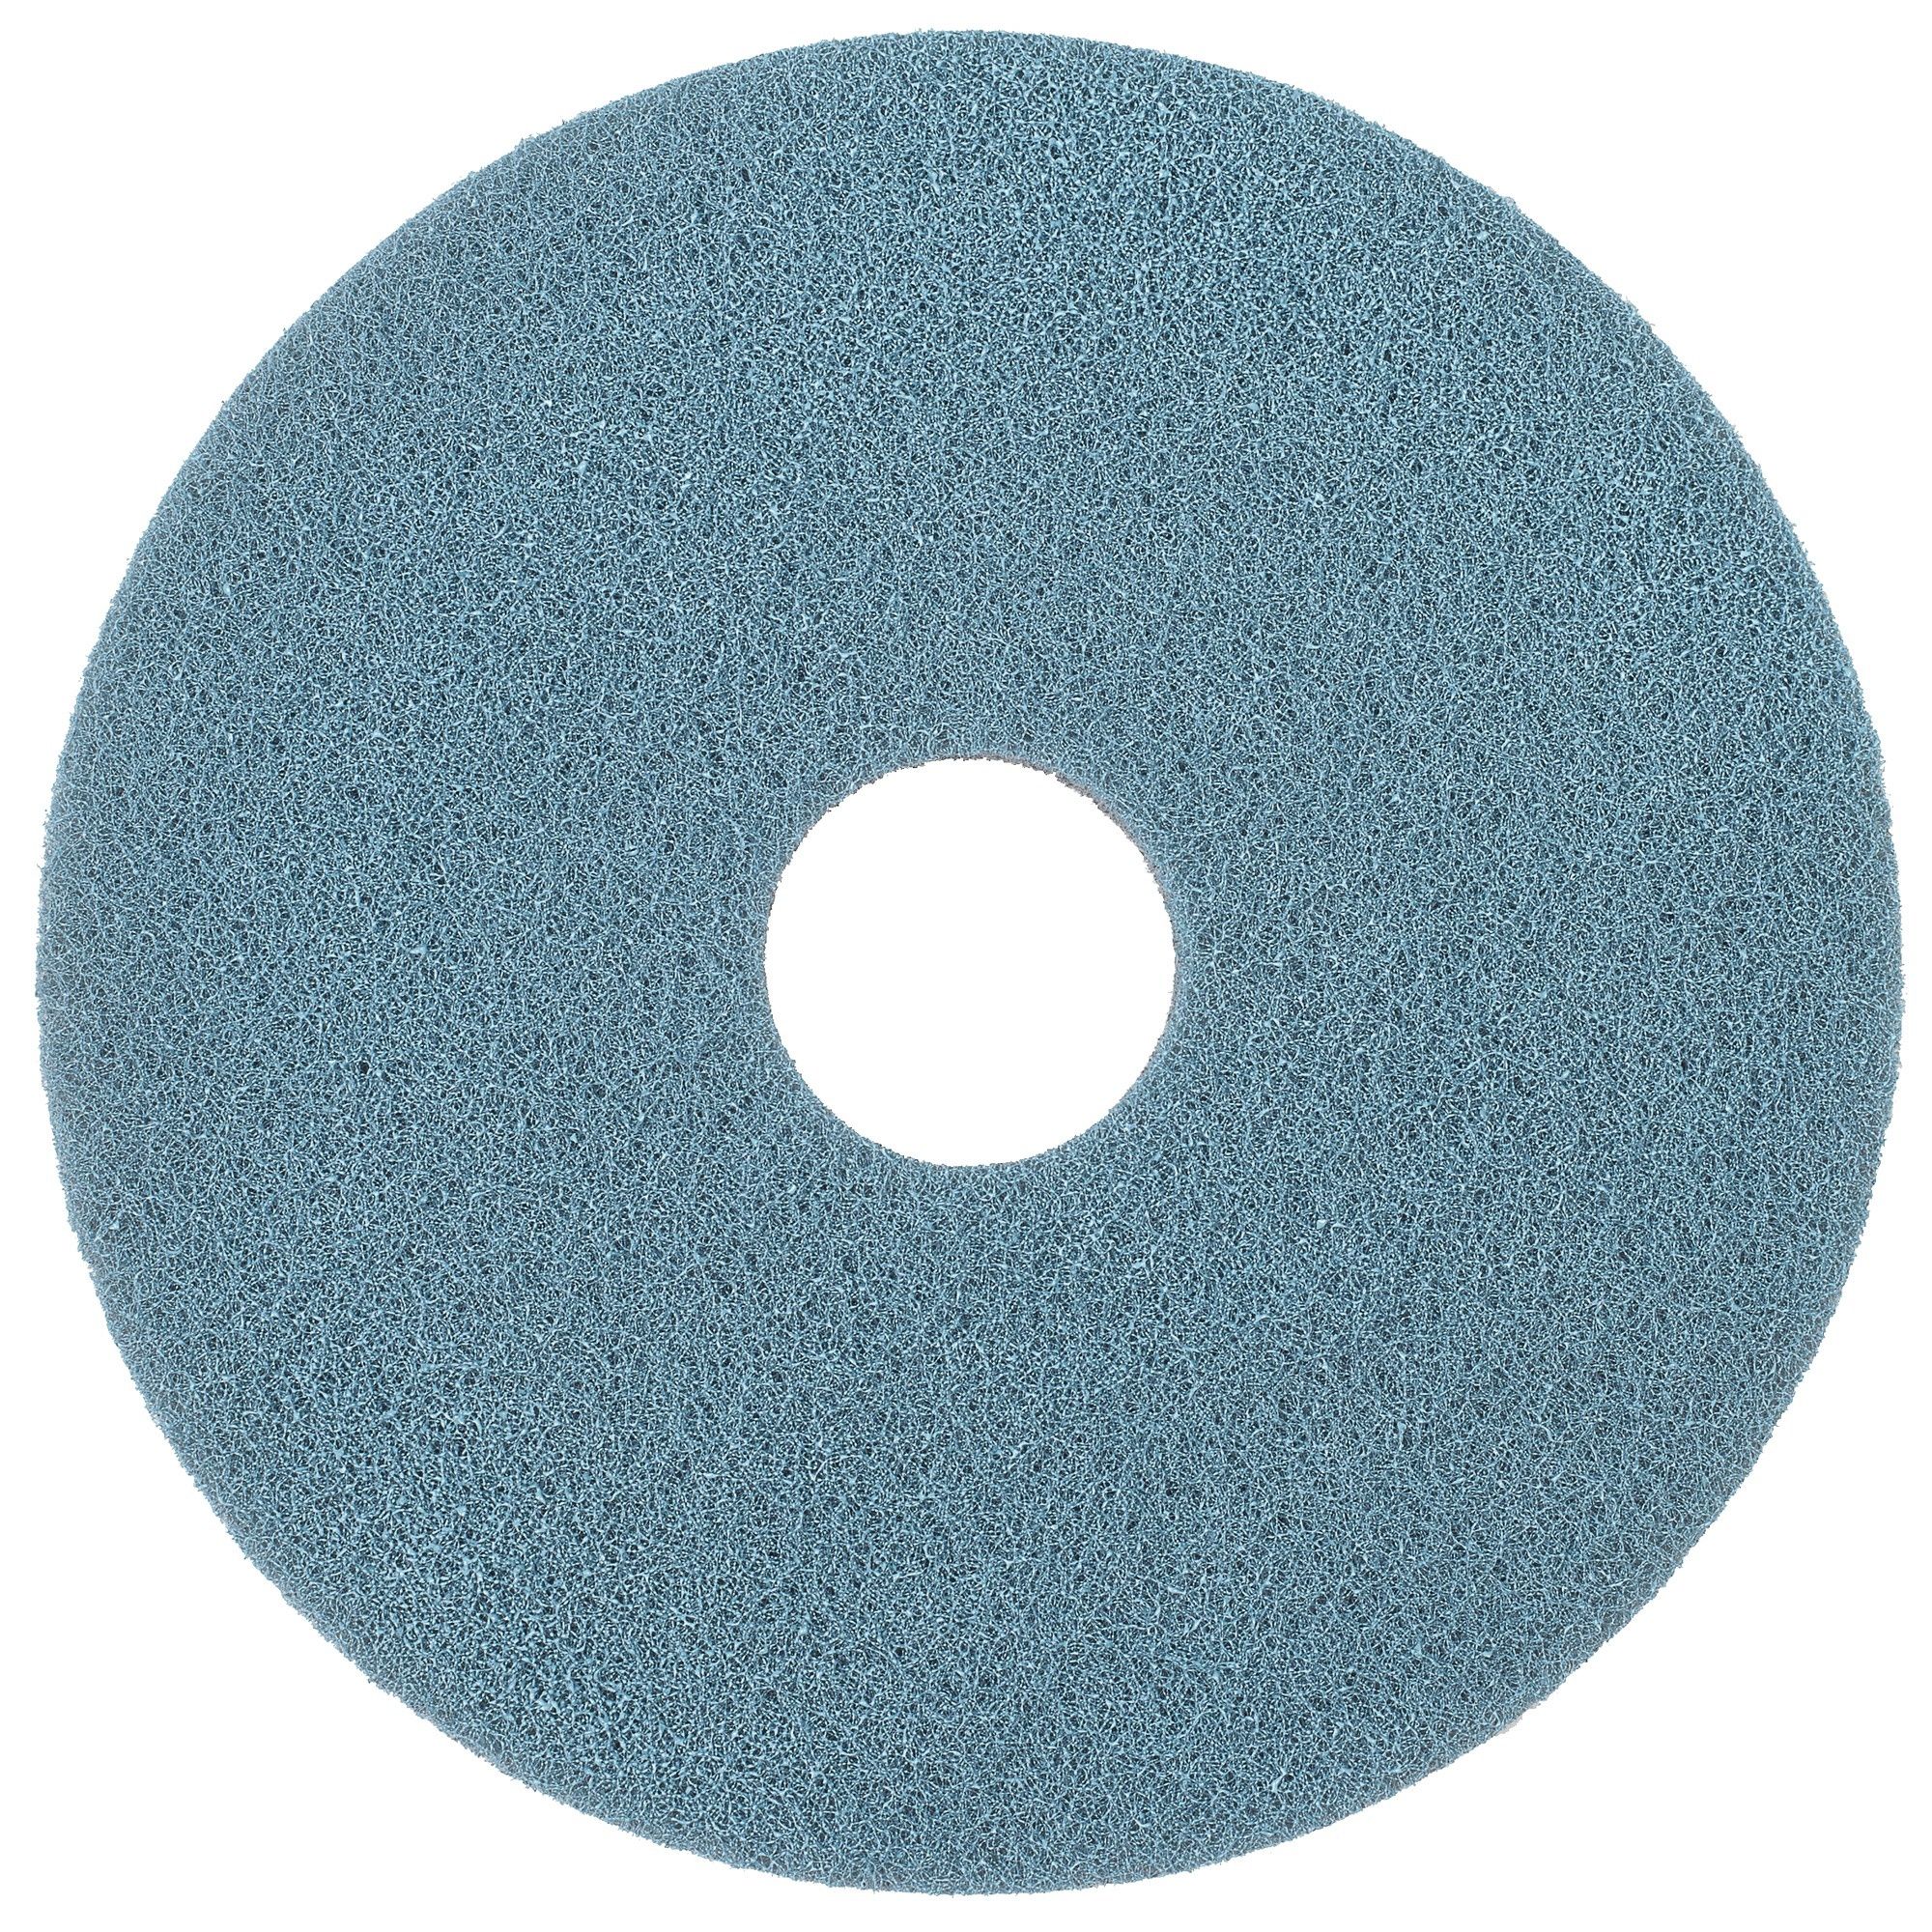 NuPad WaterOnly Xtra blauw (polijsten), per 2 stuks, 16 inch / 406 mm